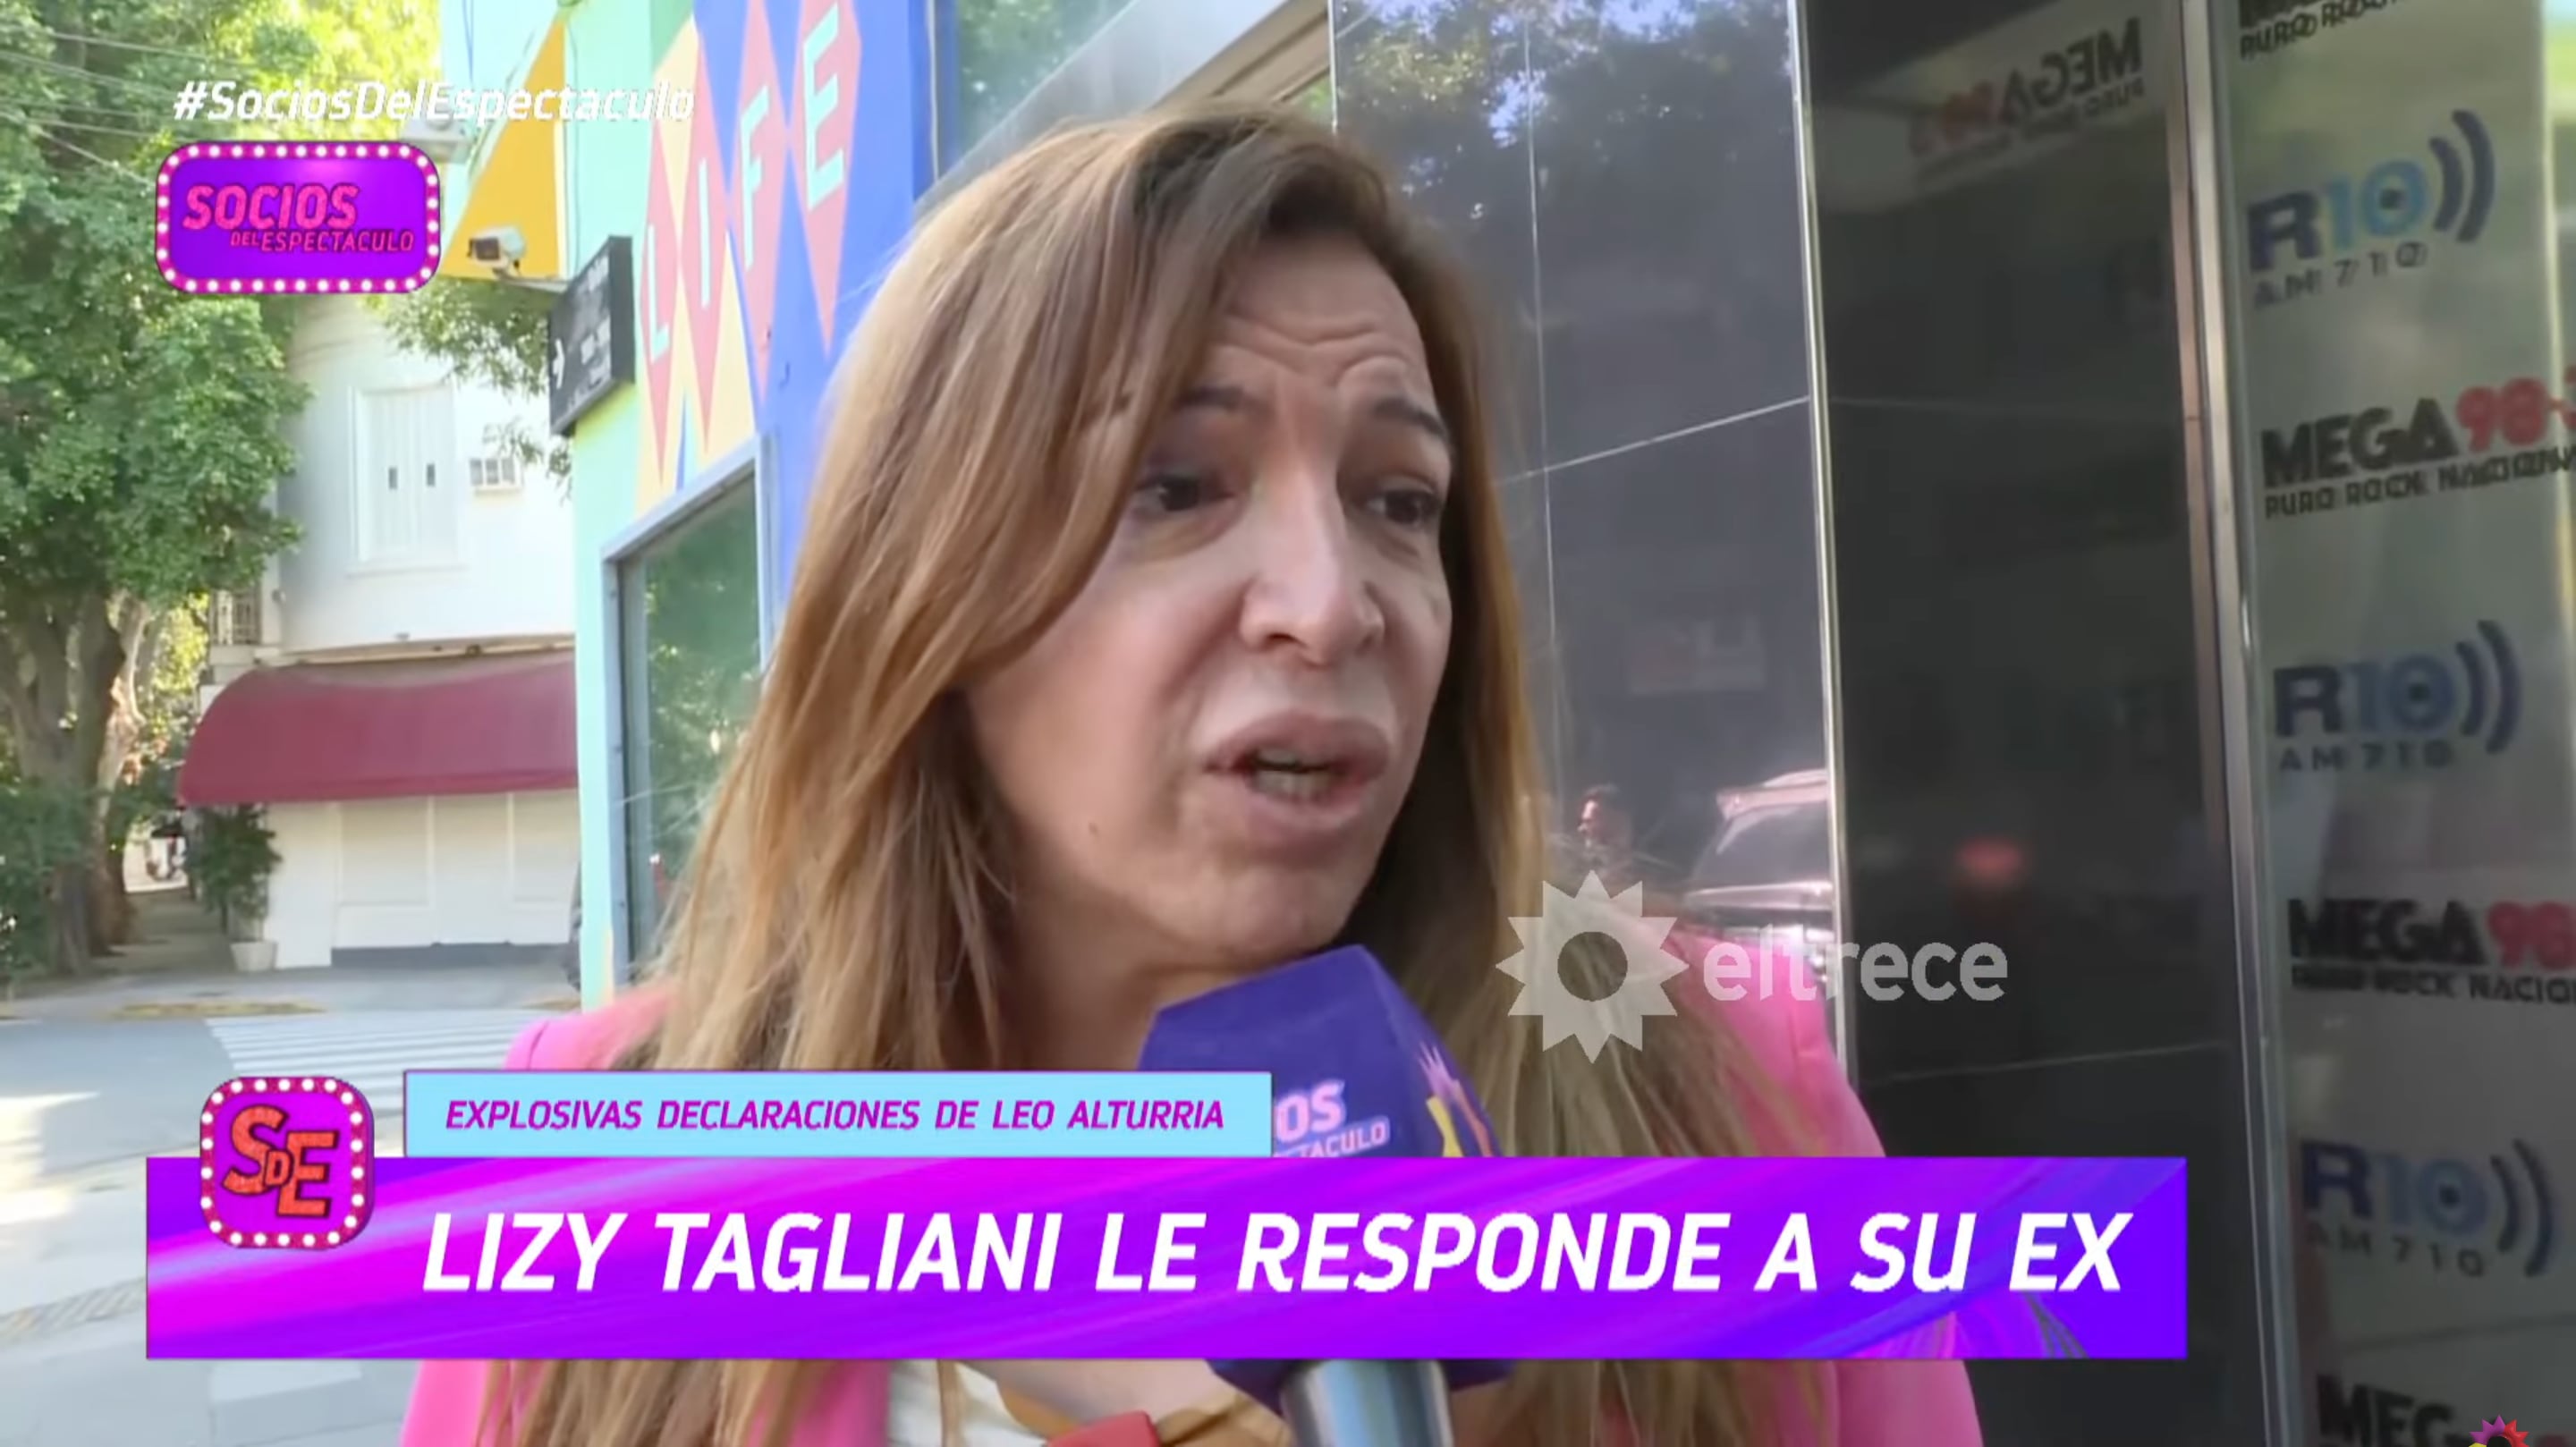 Lizy Tagliani, en díalogo con "Socios del espectáculo", le respondió a su ex, Leo Alturria. (Foto: captura de pantalla de eltrece)